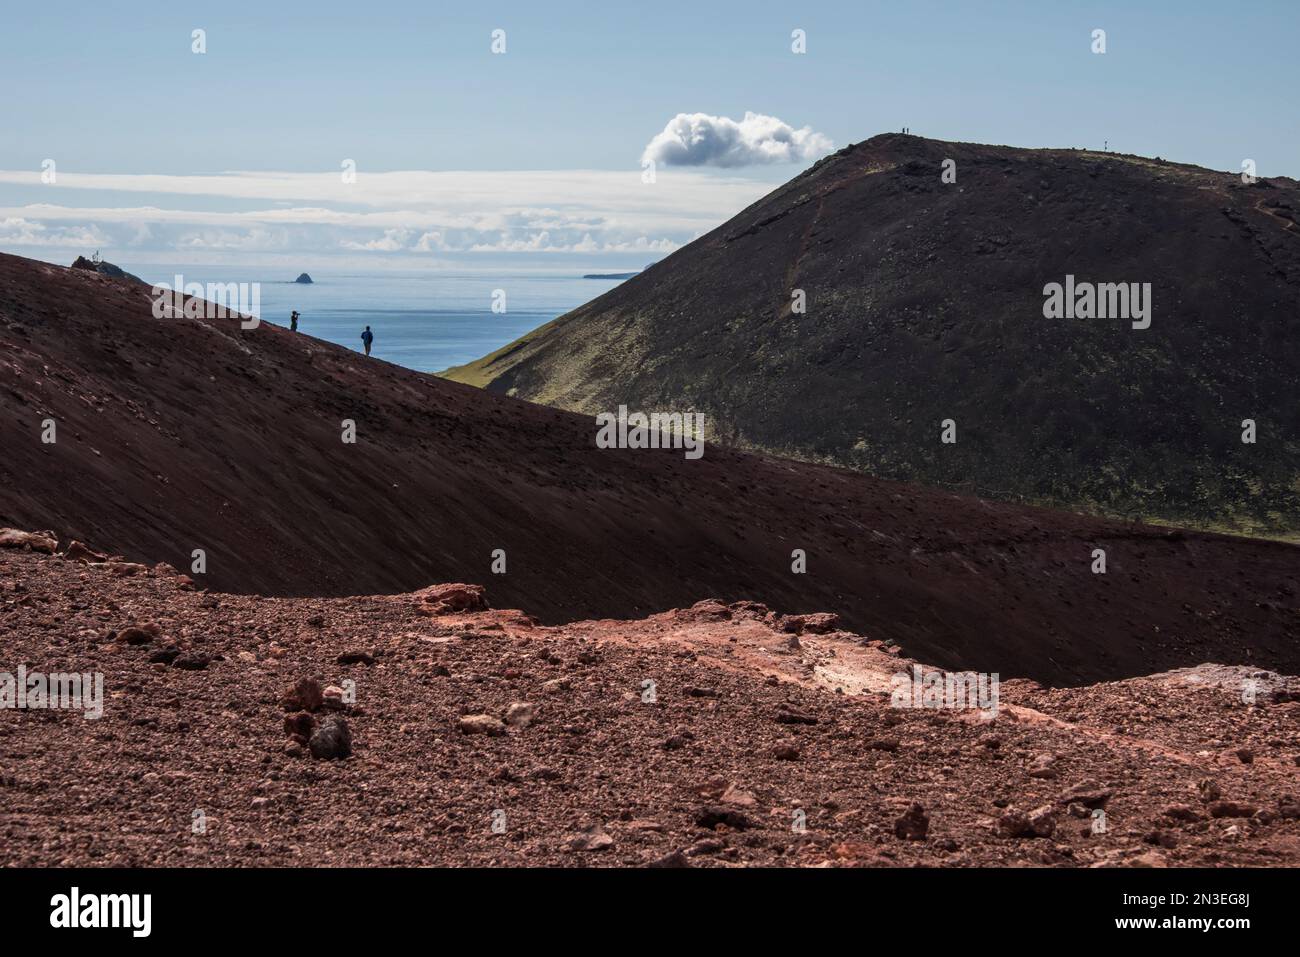 Persone che camminano sulle pendici vulcaniche esplorando il vulcano, Eldfell, sull'isola di Heimaey, parte delle Isole Westman, un arcipelago di alcuni... Foto Stock